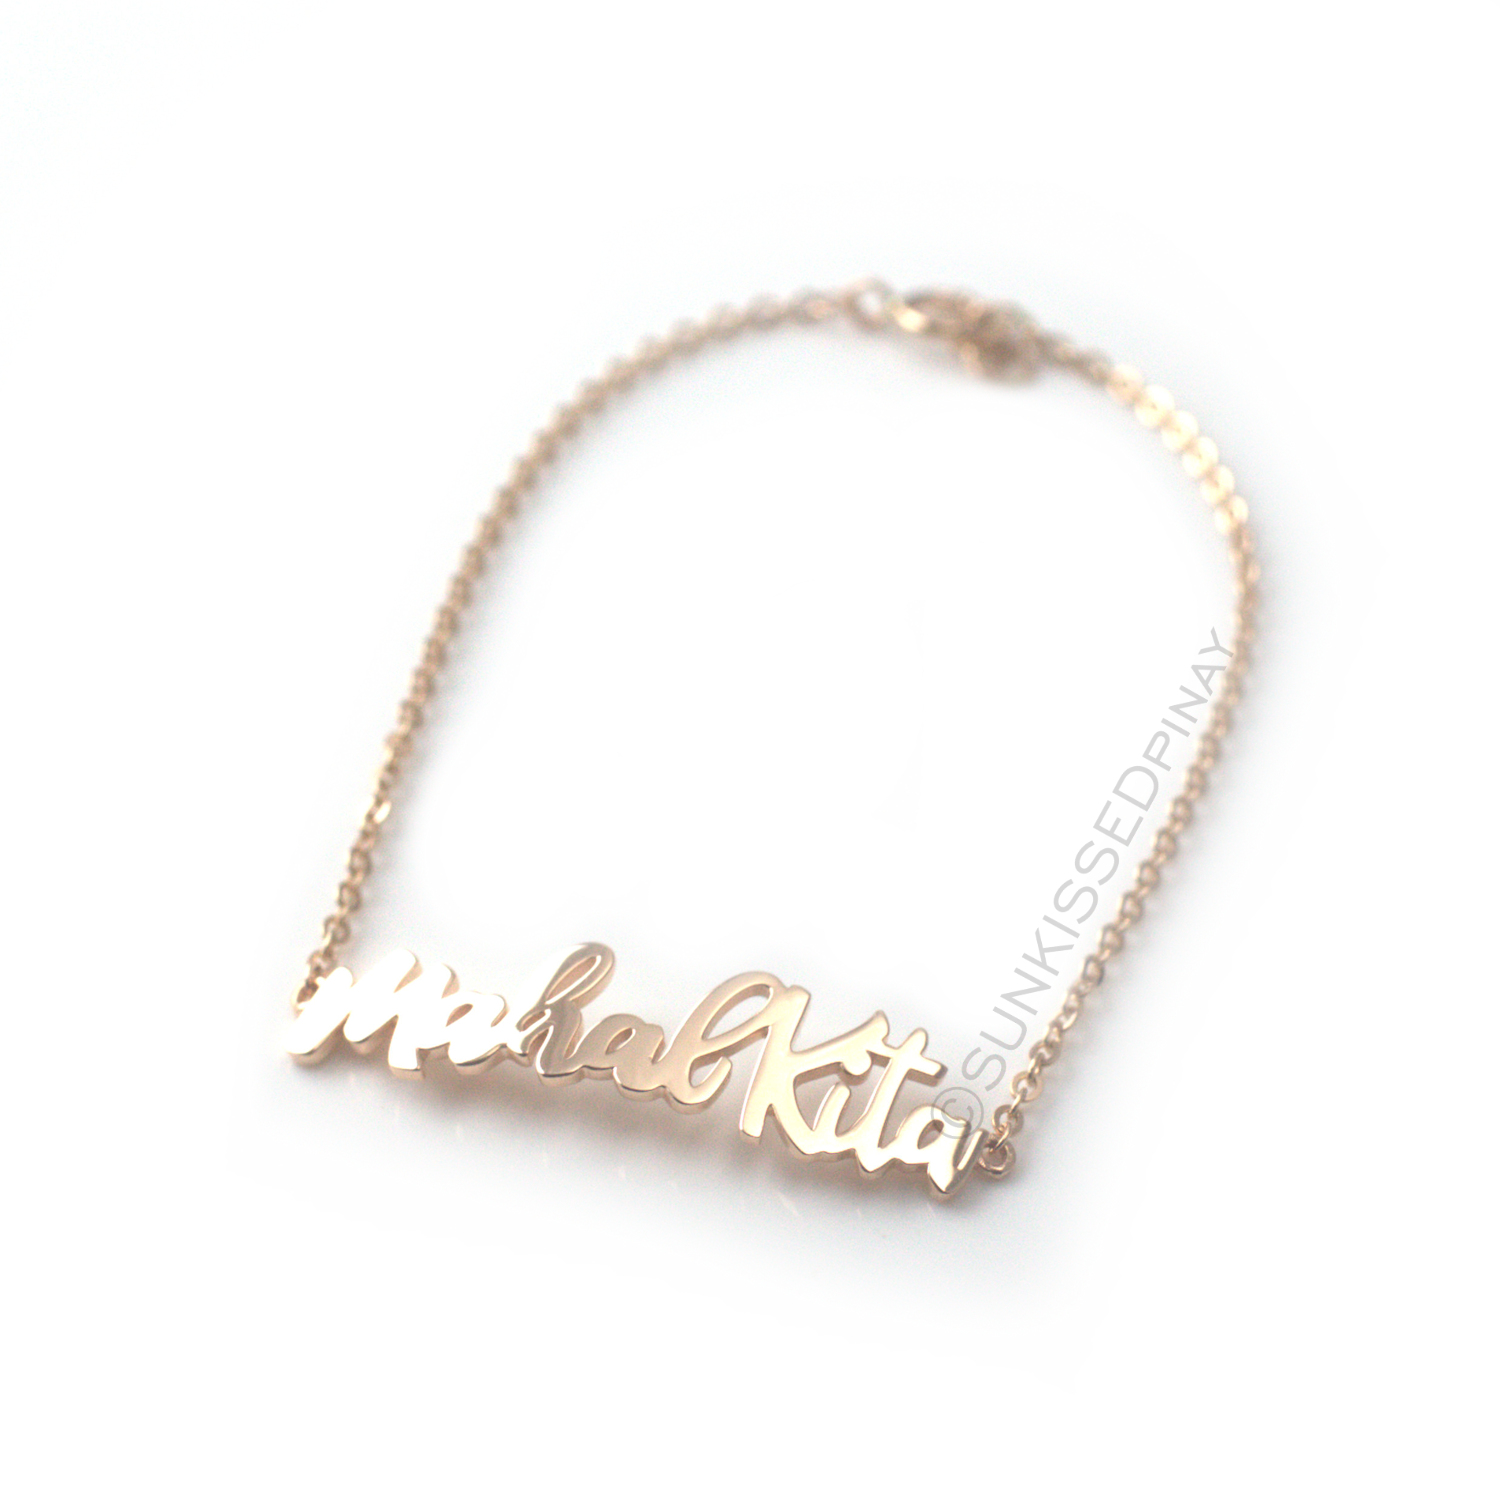 Solid Gold Mahal Kita bracelet